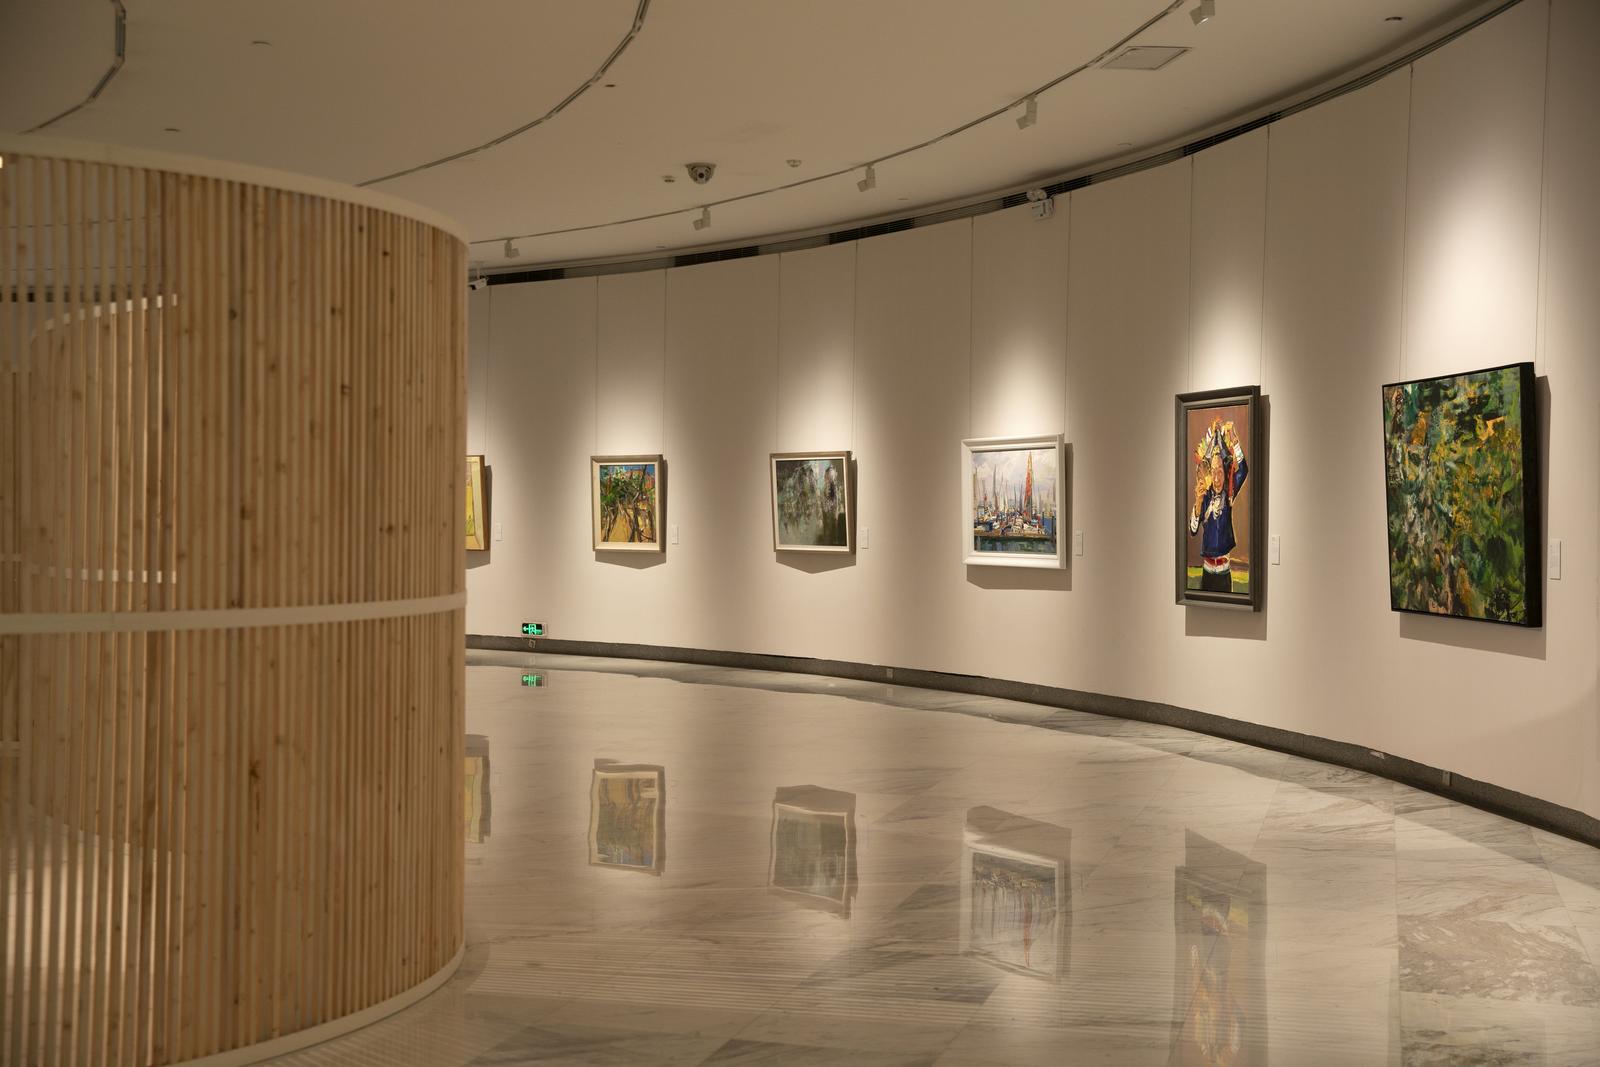 这是一个画廊内部的照片，墙上挂着几幅彩色的画作，地面反射出画作和灯光，展示空间宽敞且有现代感。